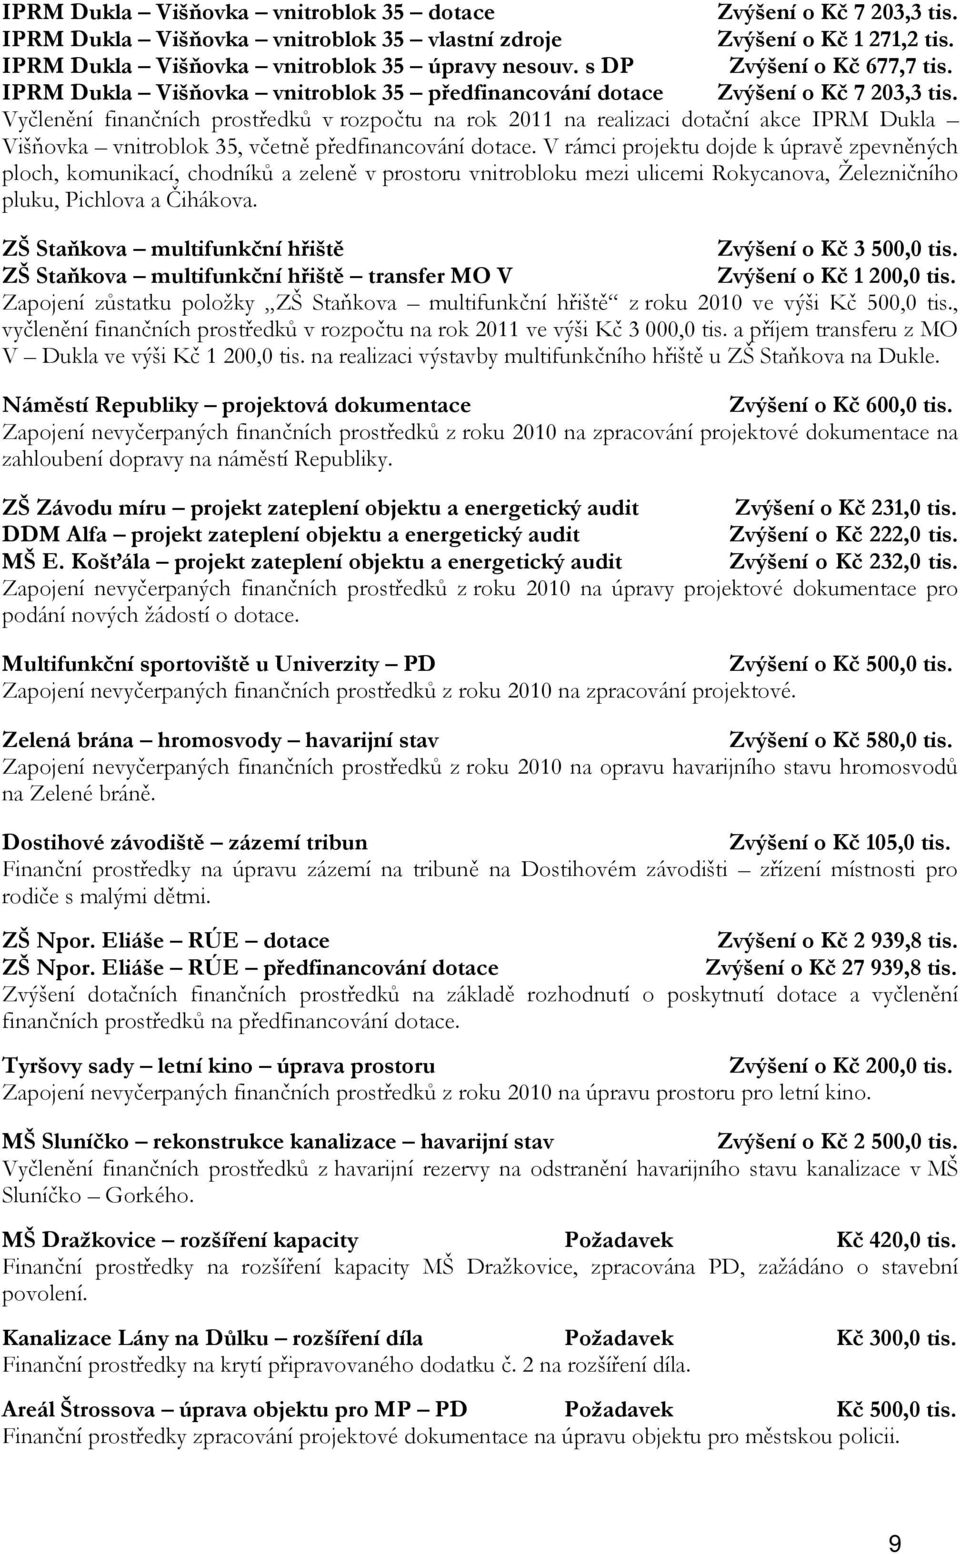 Vyčlenění finančních prostředků v rozpočtu na rok 2011 na realizaci dotační akce IPRM Dukla Višňovka vnitroblok 35, včetně předfinancování dotace.